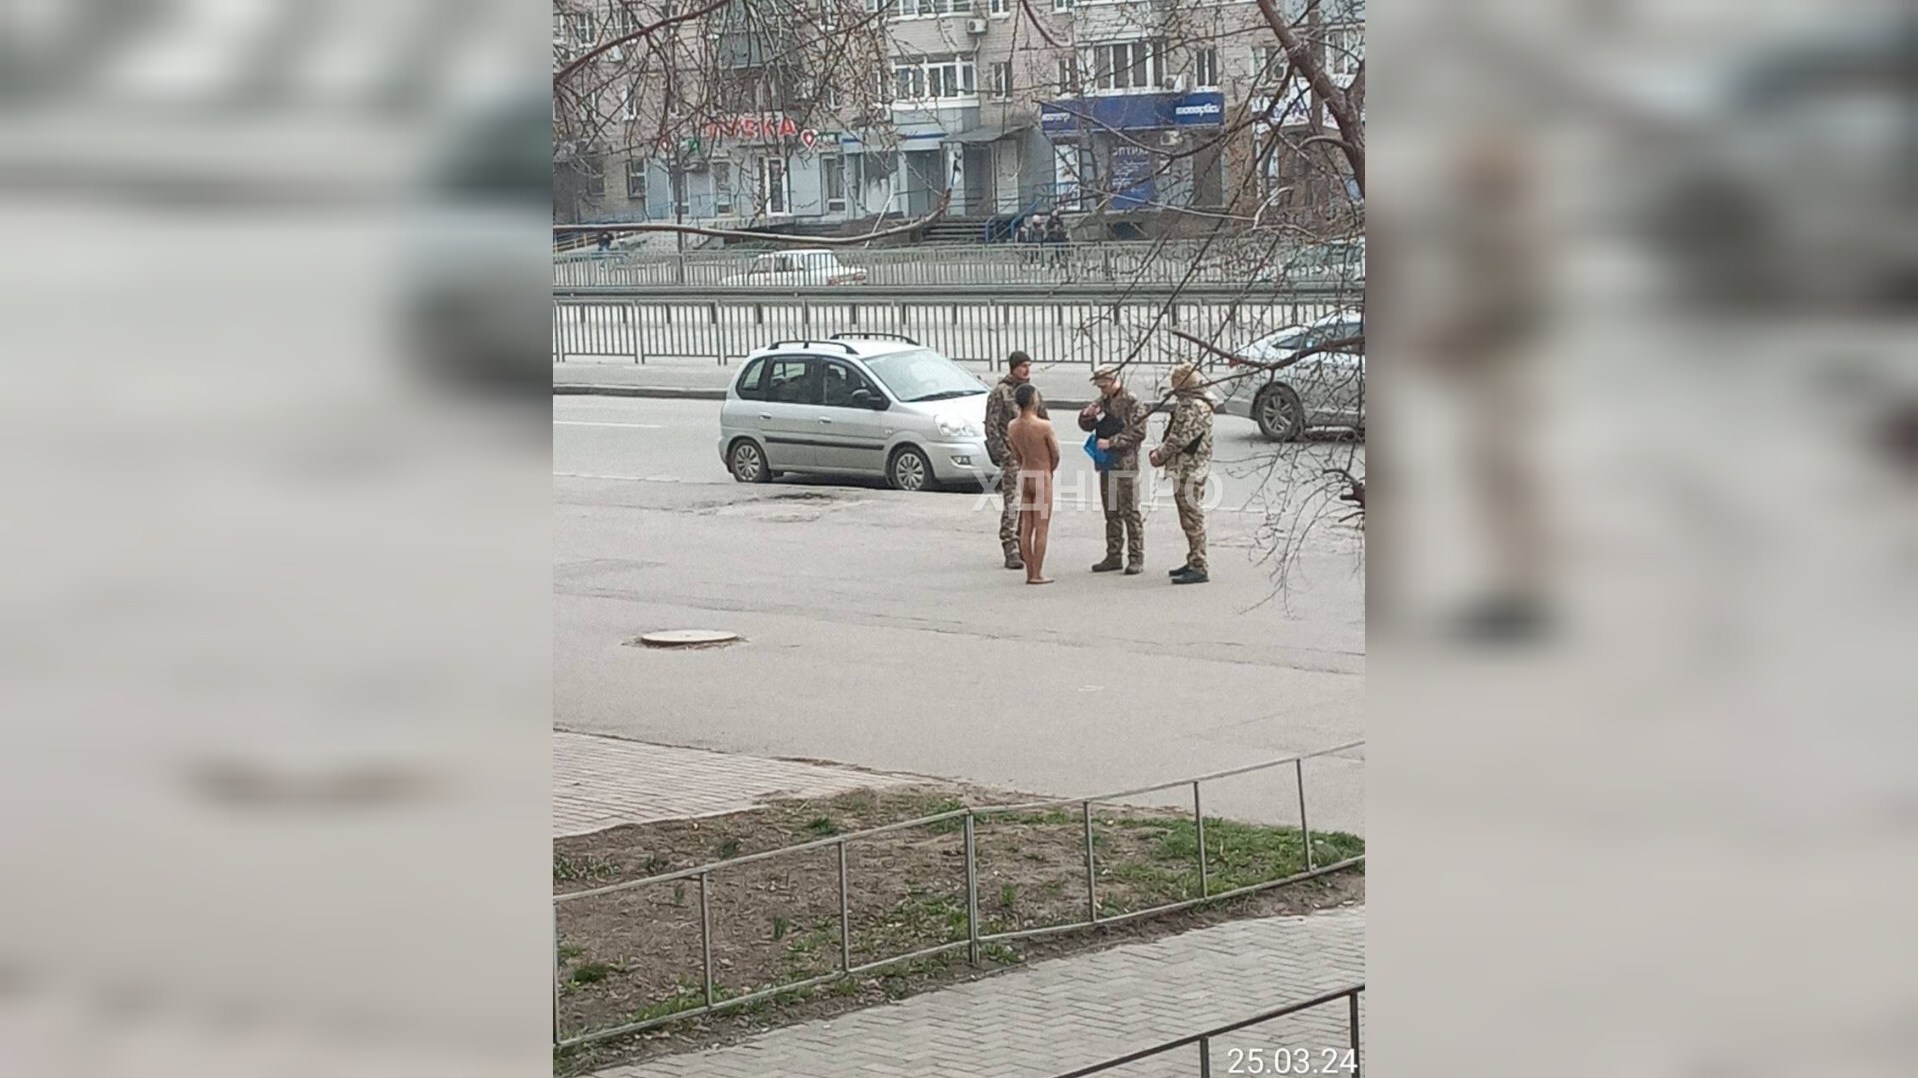 Весняне загострення чи спроба пройти ВЛК просто на вулиці: оголений чоловік на вулицях Дніпра